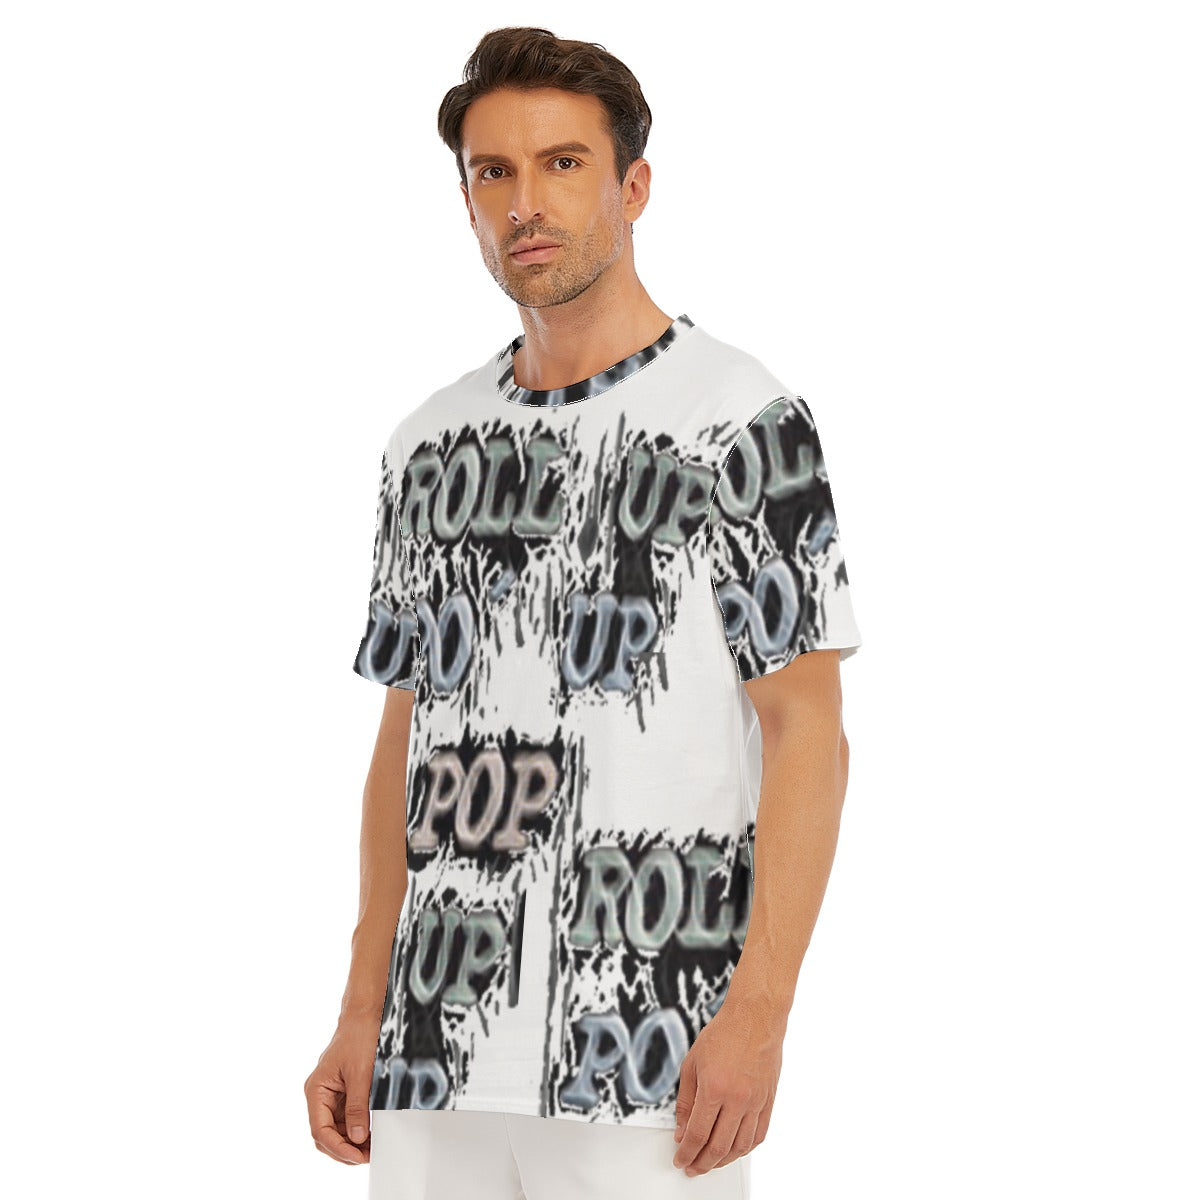 Roll Up Po' Up Pop Men's O-Neck T-Shirt | 100% Cotton - men's t-shirt at TFC&H Co.